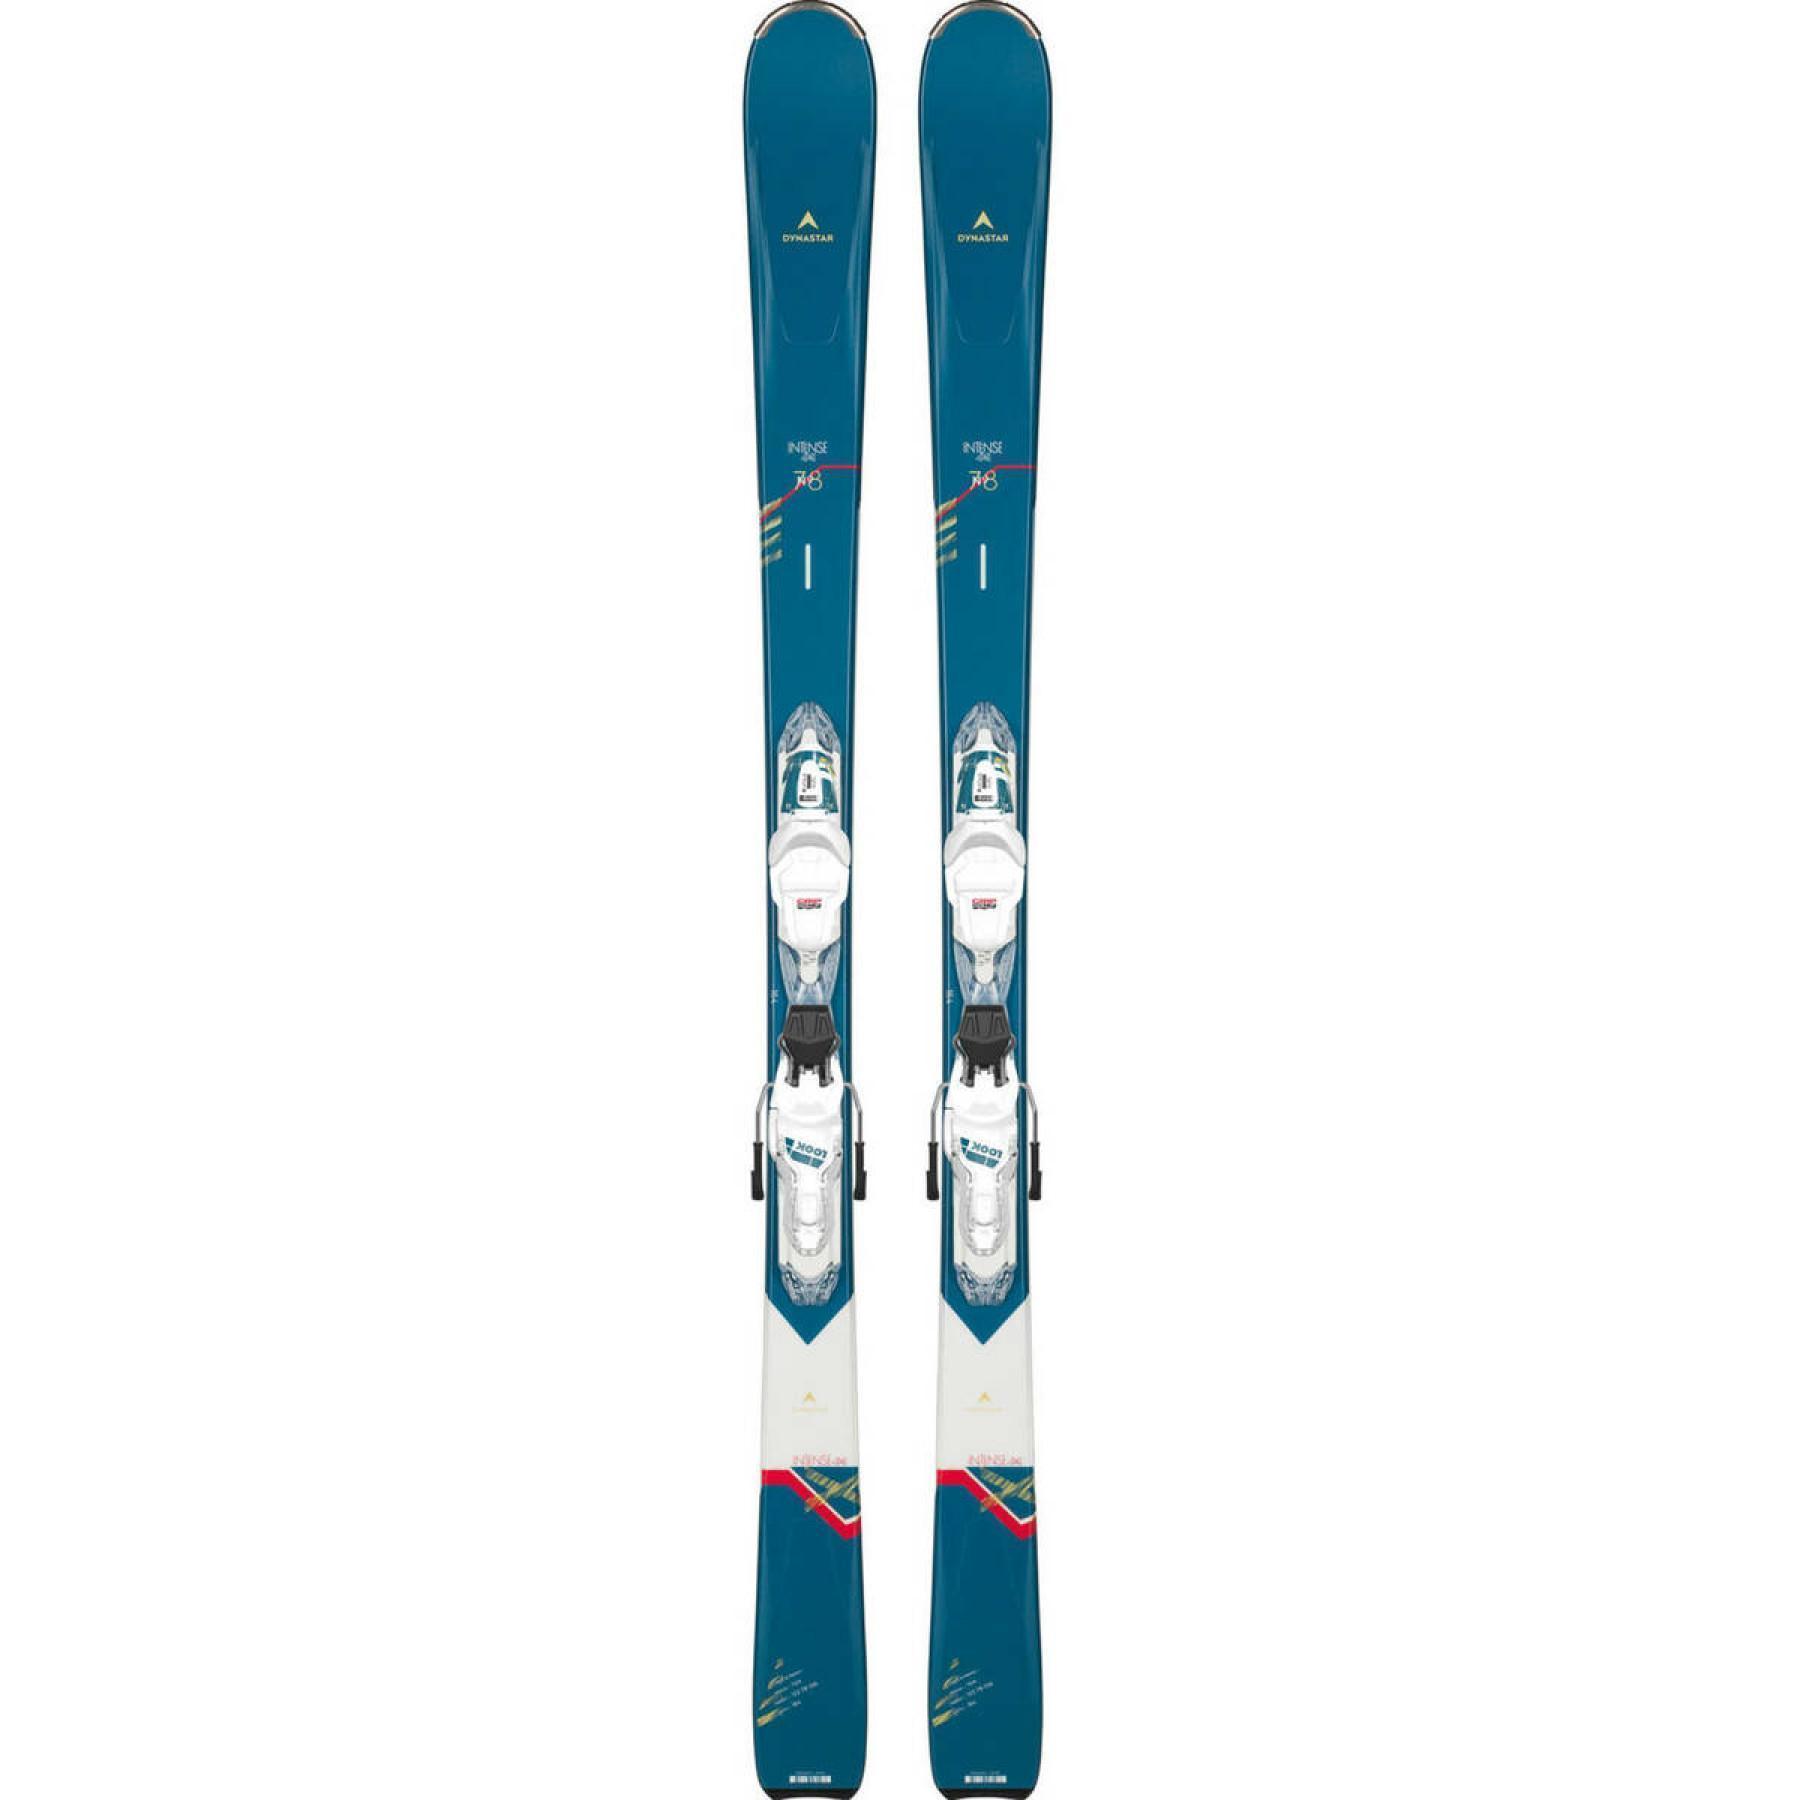 Esquí para mujeres Dynastar intense 4x4 78/11 gw w/dk